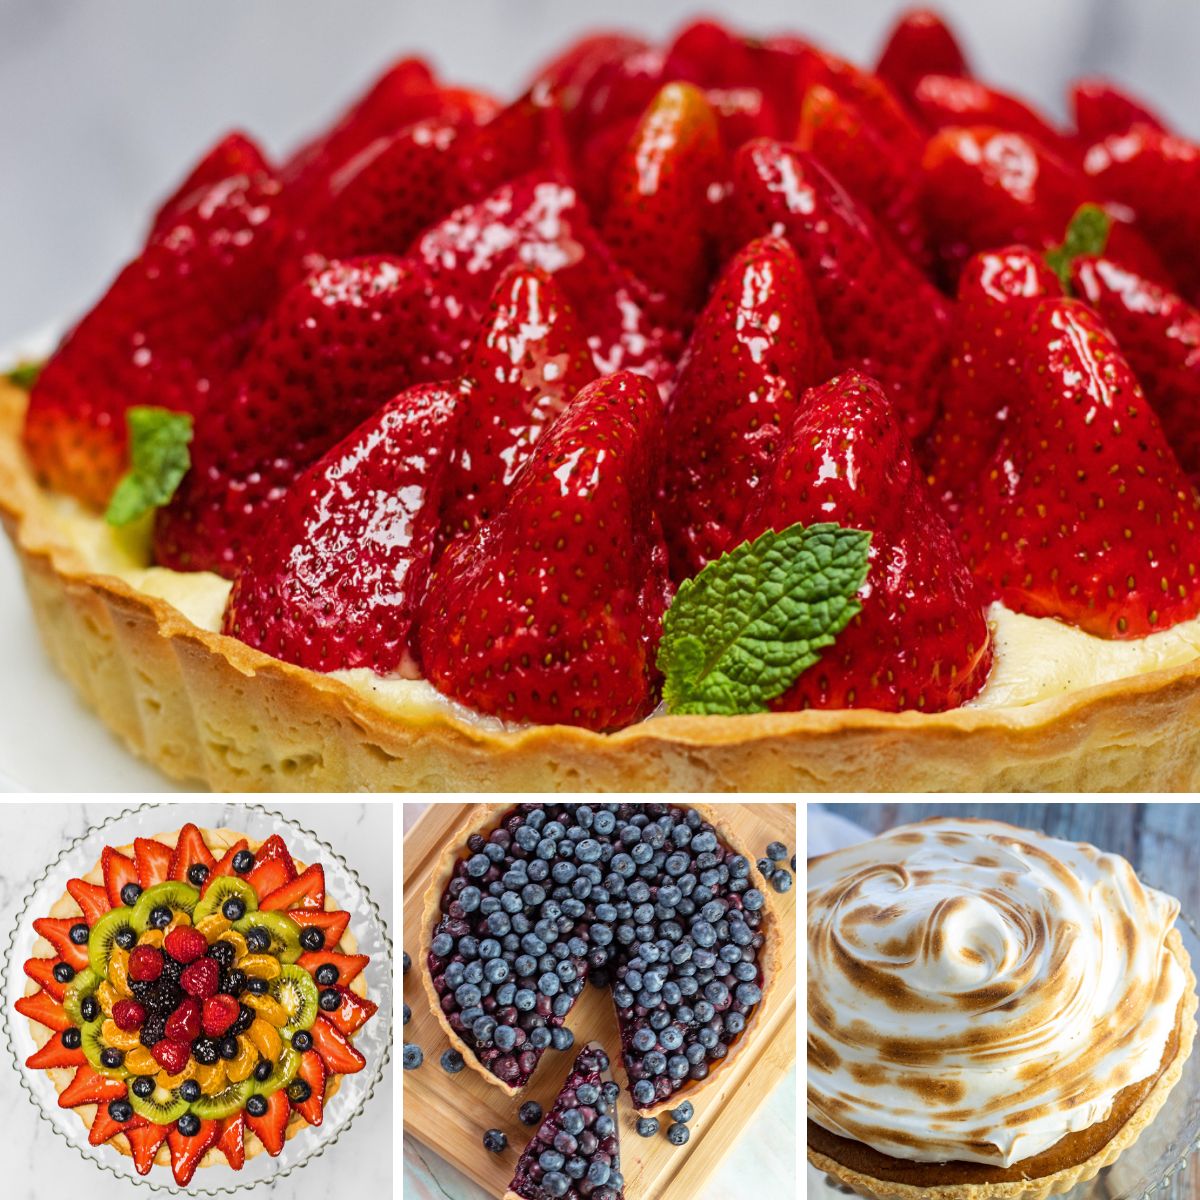 Meilleure image de collage de recettes de tartes avec 4 tartes en vedette.